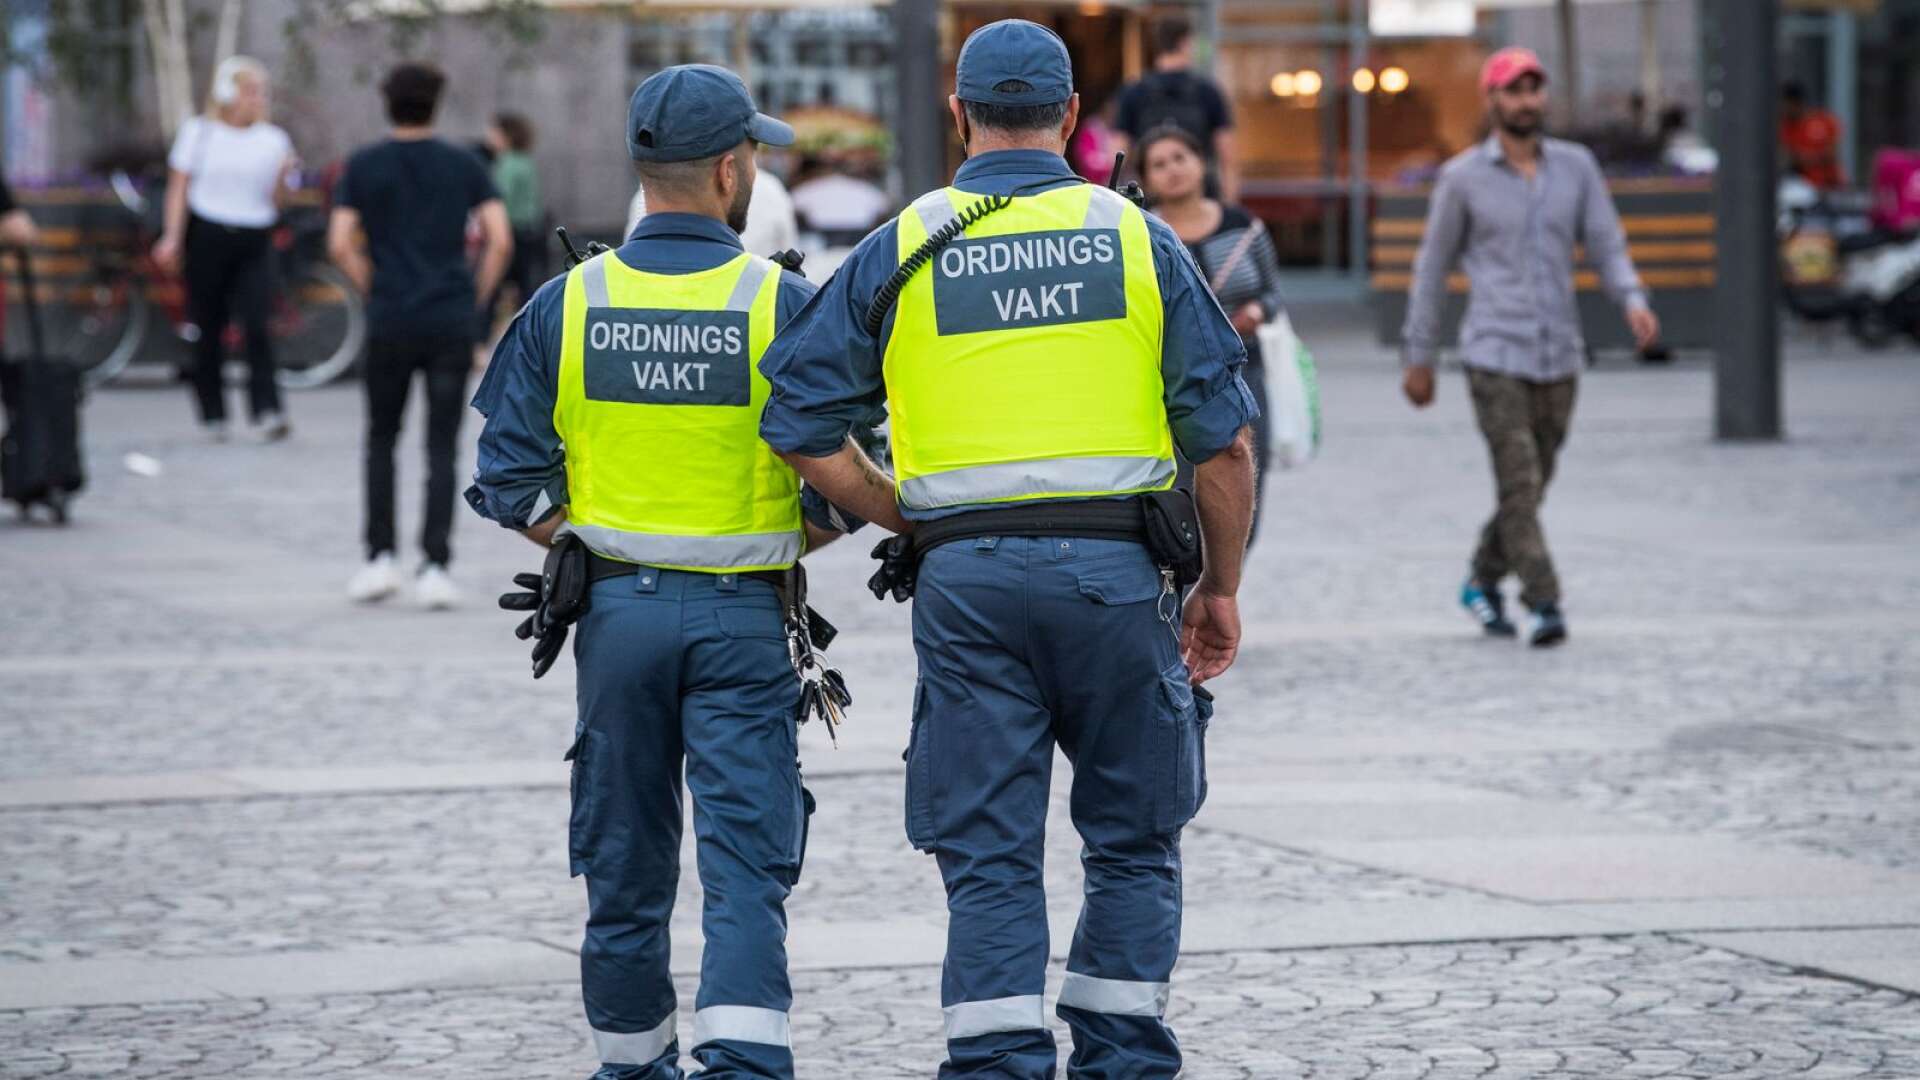 Vi i Sverigedemokraterna Karlstad vill se en ökad satsning på tryggheten för våra invånare i Karlstad med en rad riktade insatser, bland annat kameraövervakning samt patrullerande ordningsvakter, skriver Anders Birkefjärd och Robin Lennartsson.